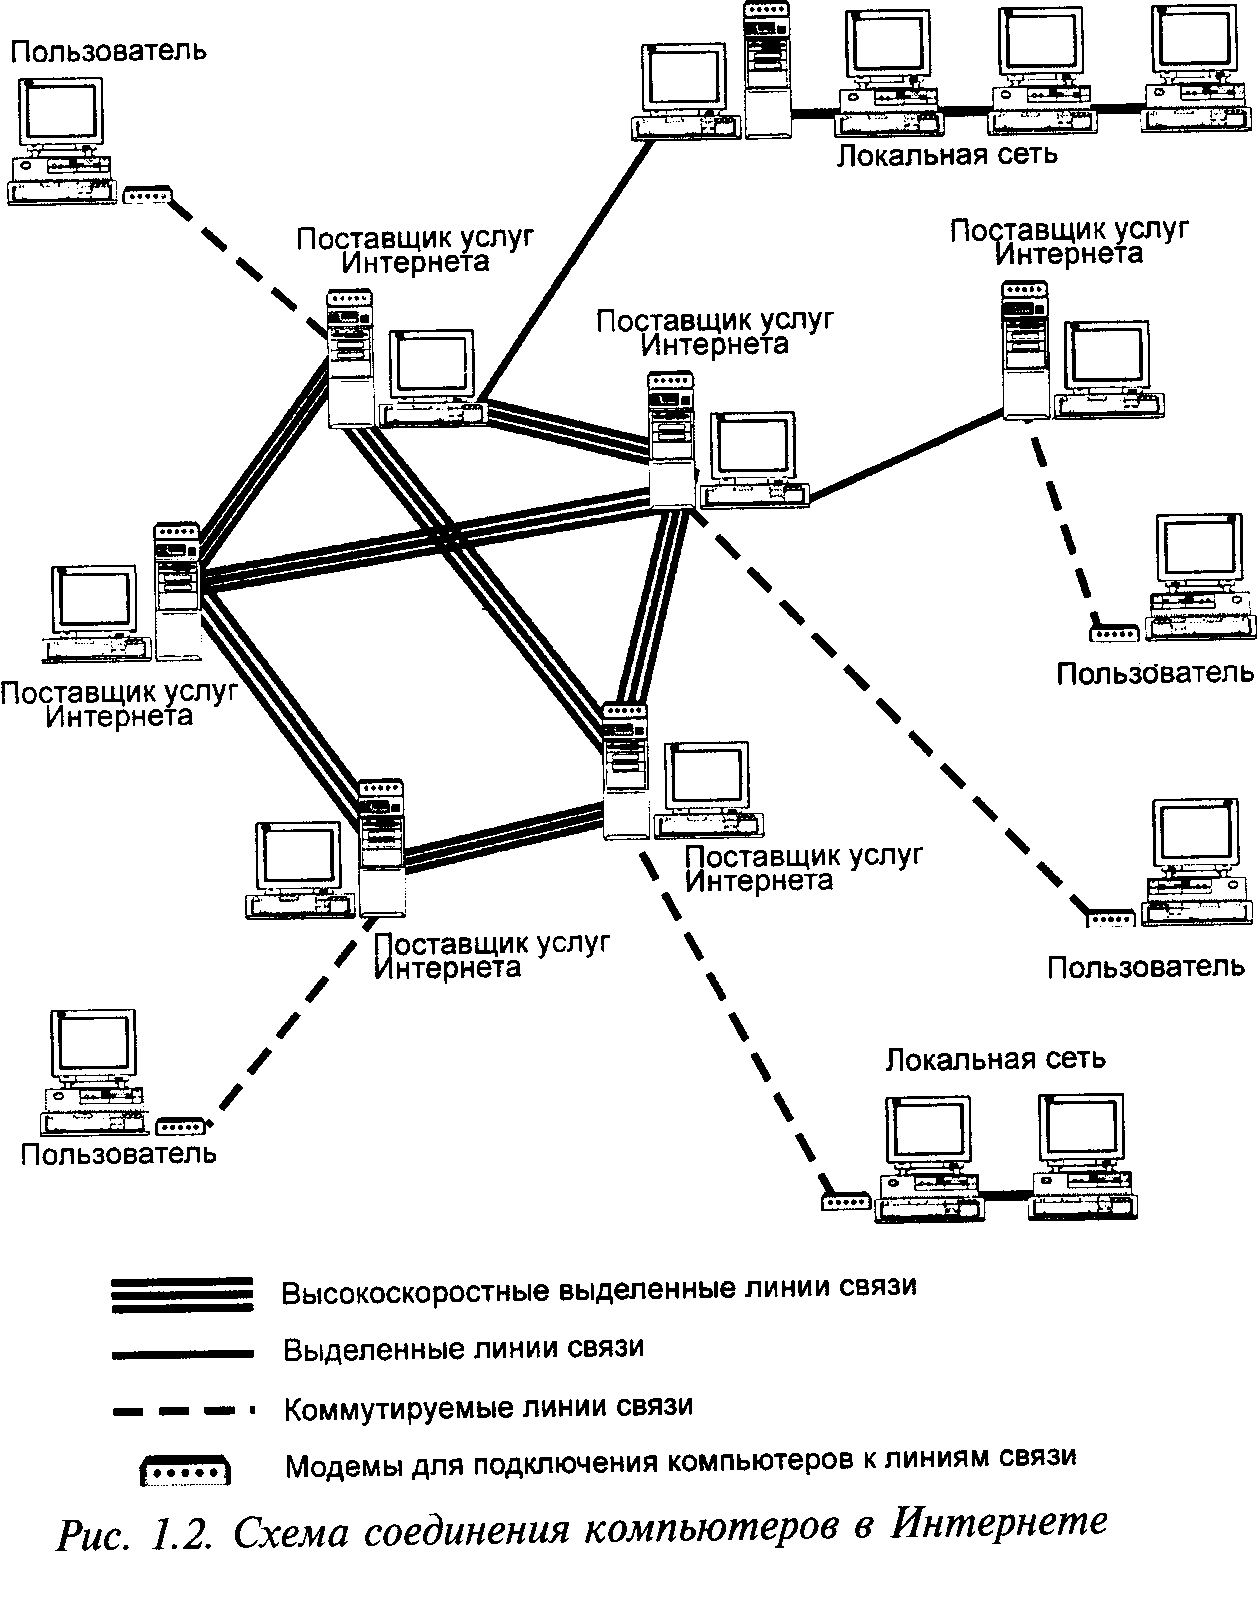 Внутренняя сеть организации. Схема локальной сети организации интернет провайдера. Структурная схема подключения к локальной сети. Схема соединения 3 локальной сети. Принципиальные схемы сетей связи.